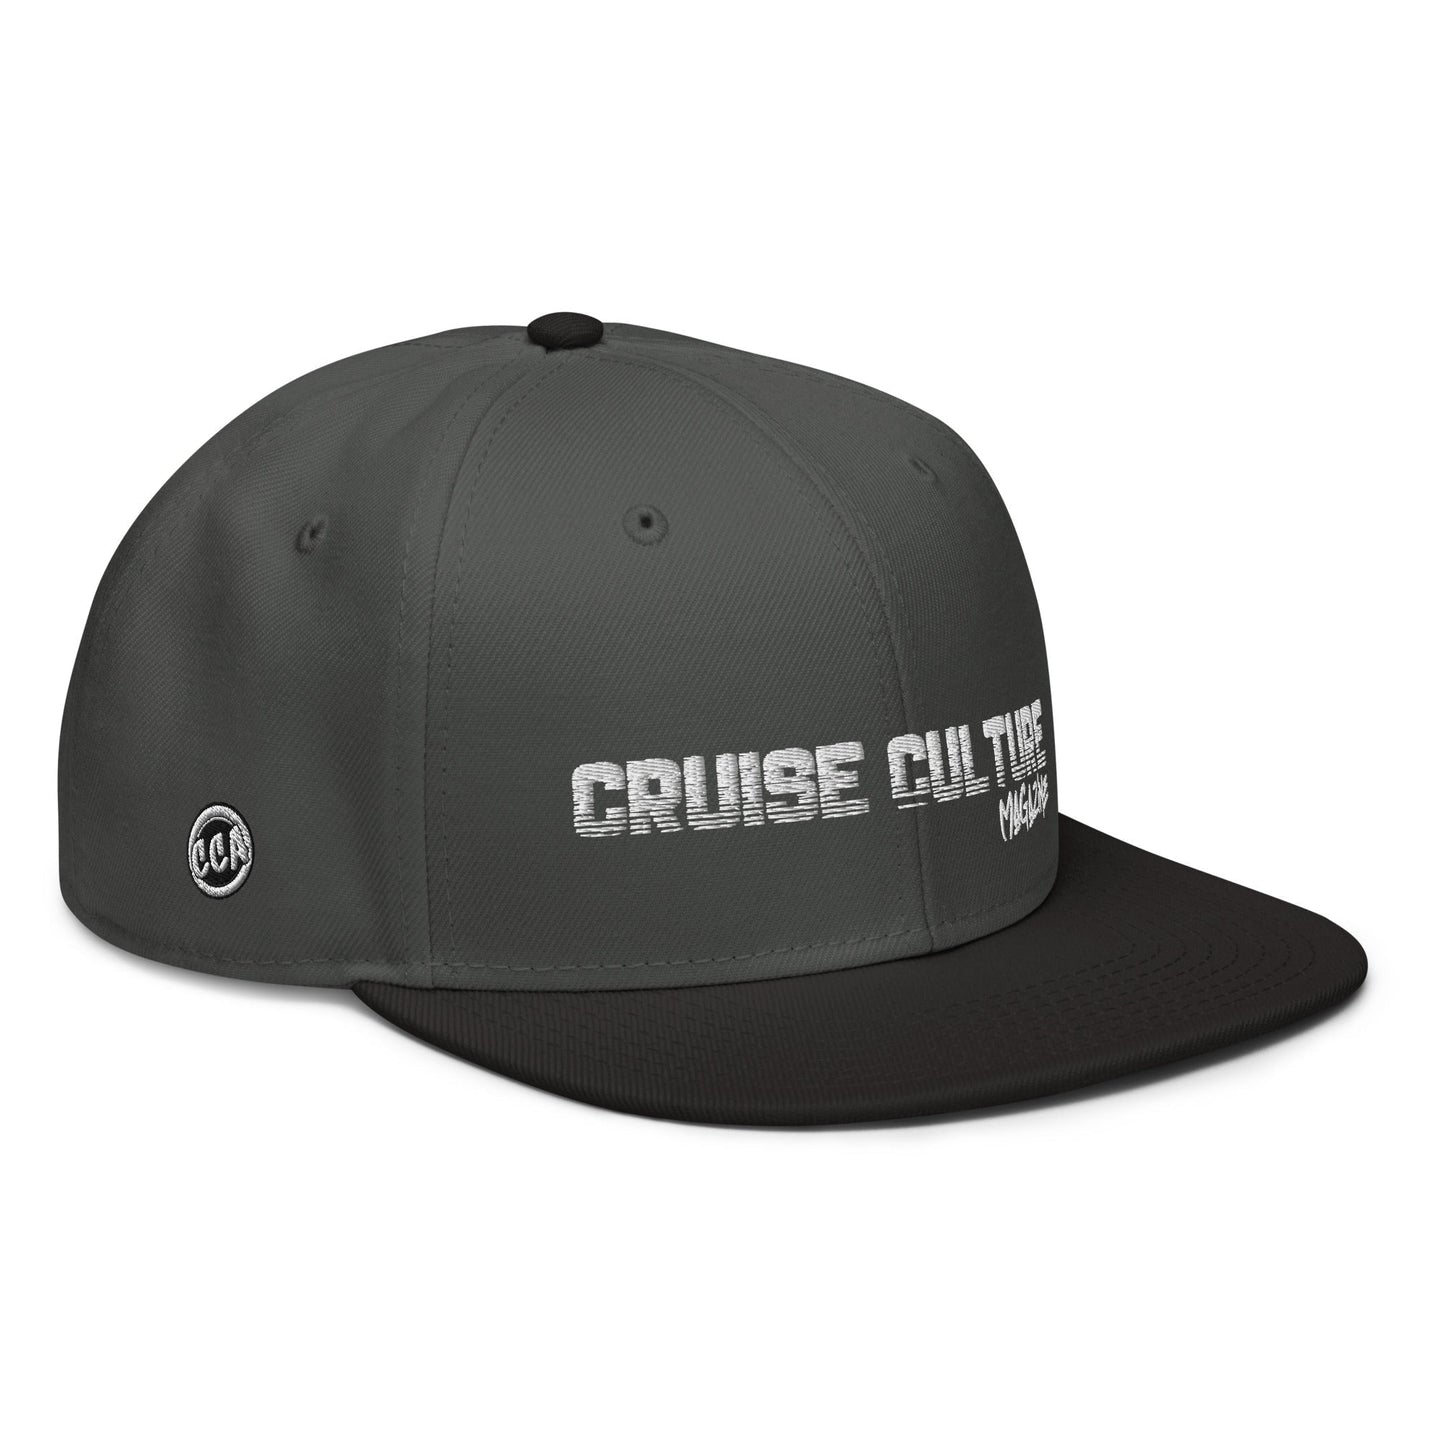 Cruise Culture Magazine Snapback Hat + Magazine